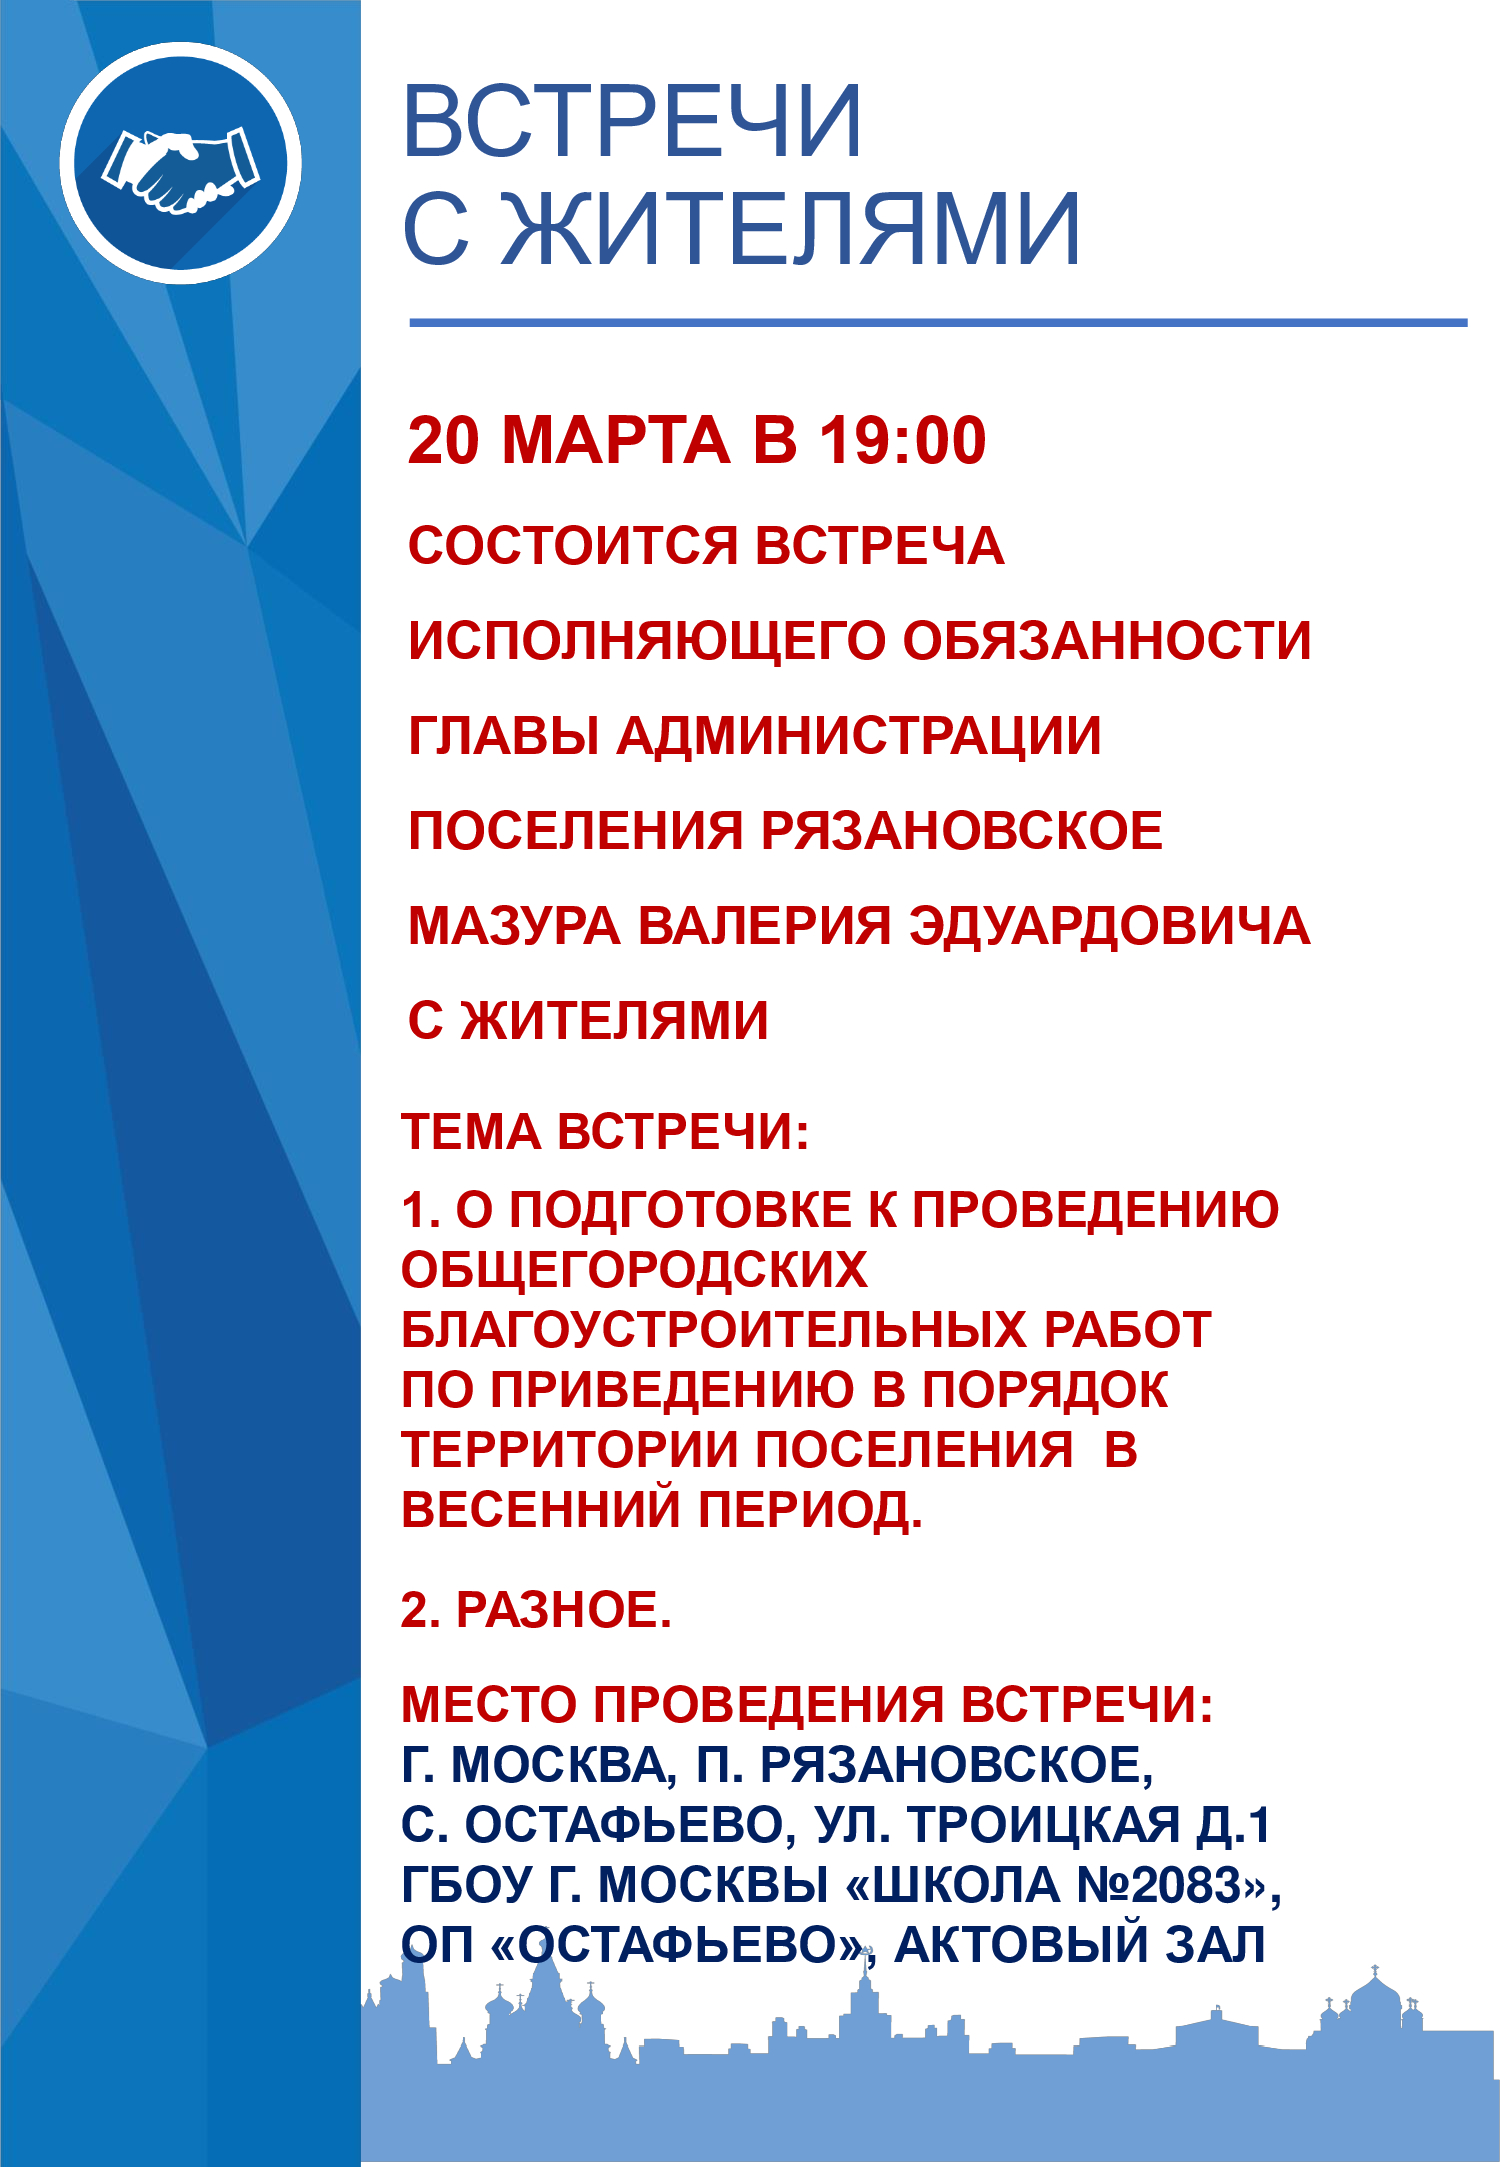 20 марта в 19:00 состоится встреча исполняющего обязанности главы администрации поселения Рязановское Мазура Валерия Эдуардовича с жителями 